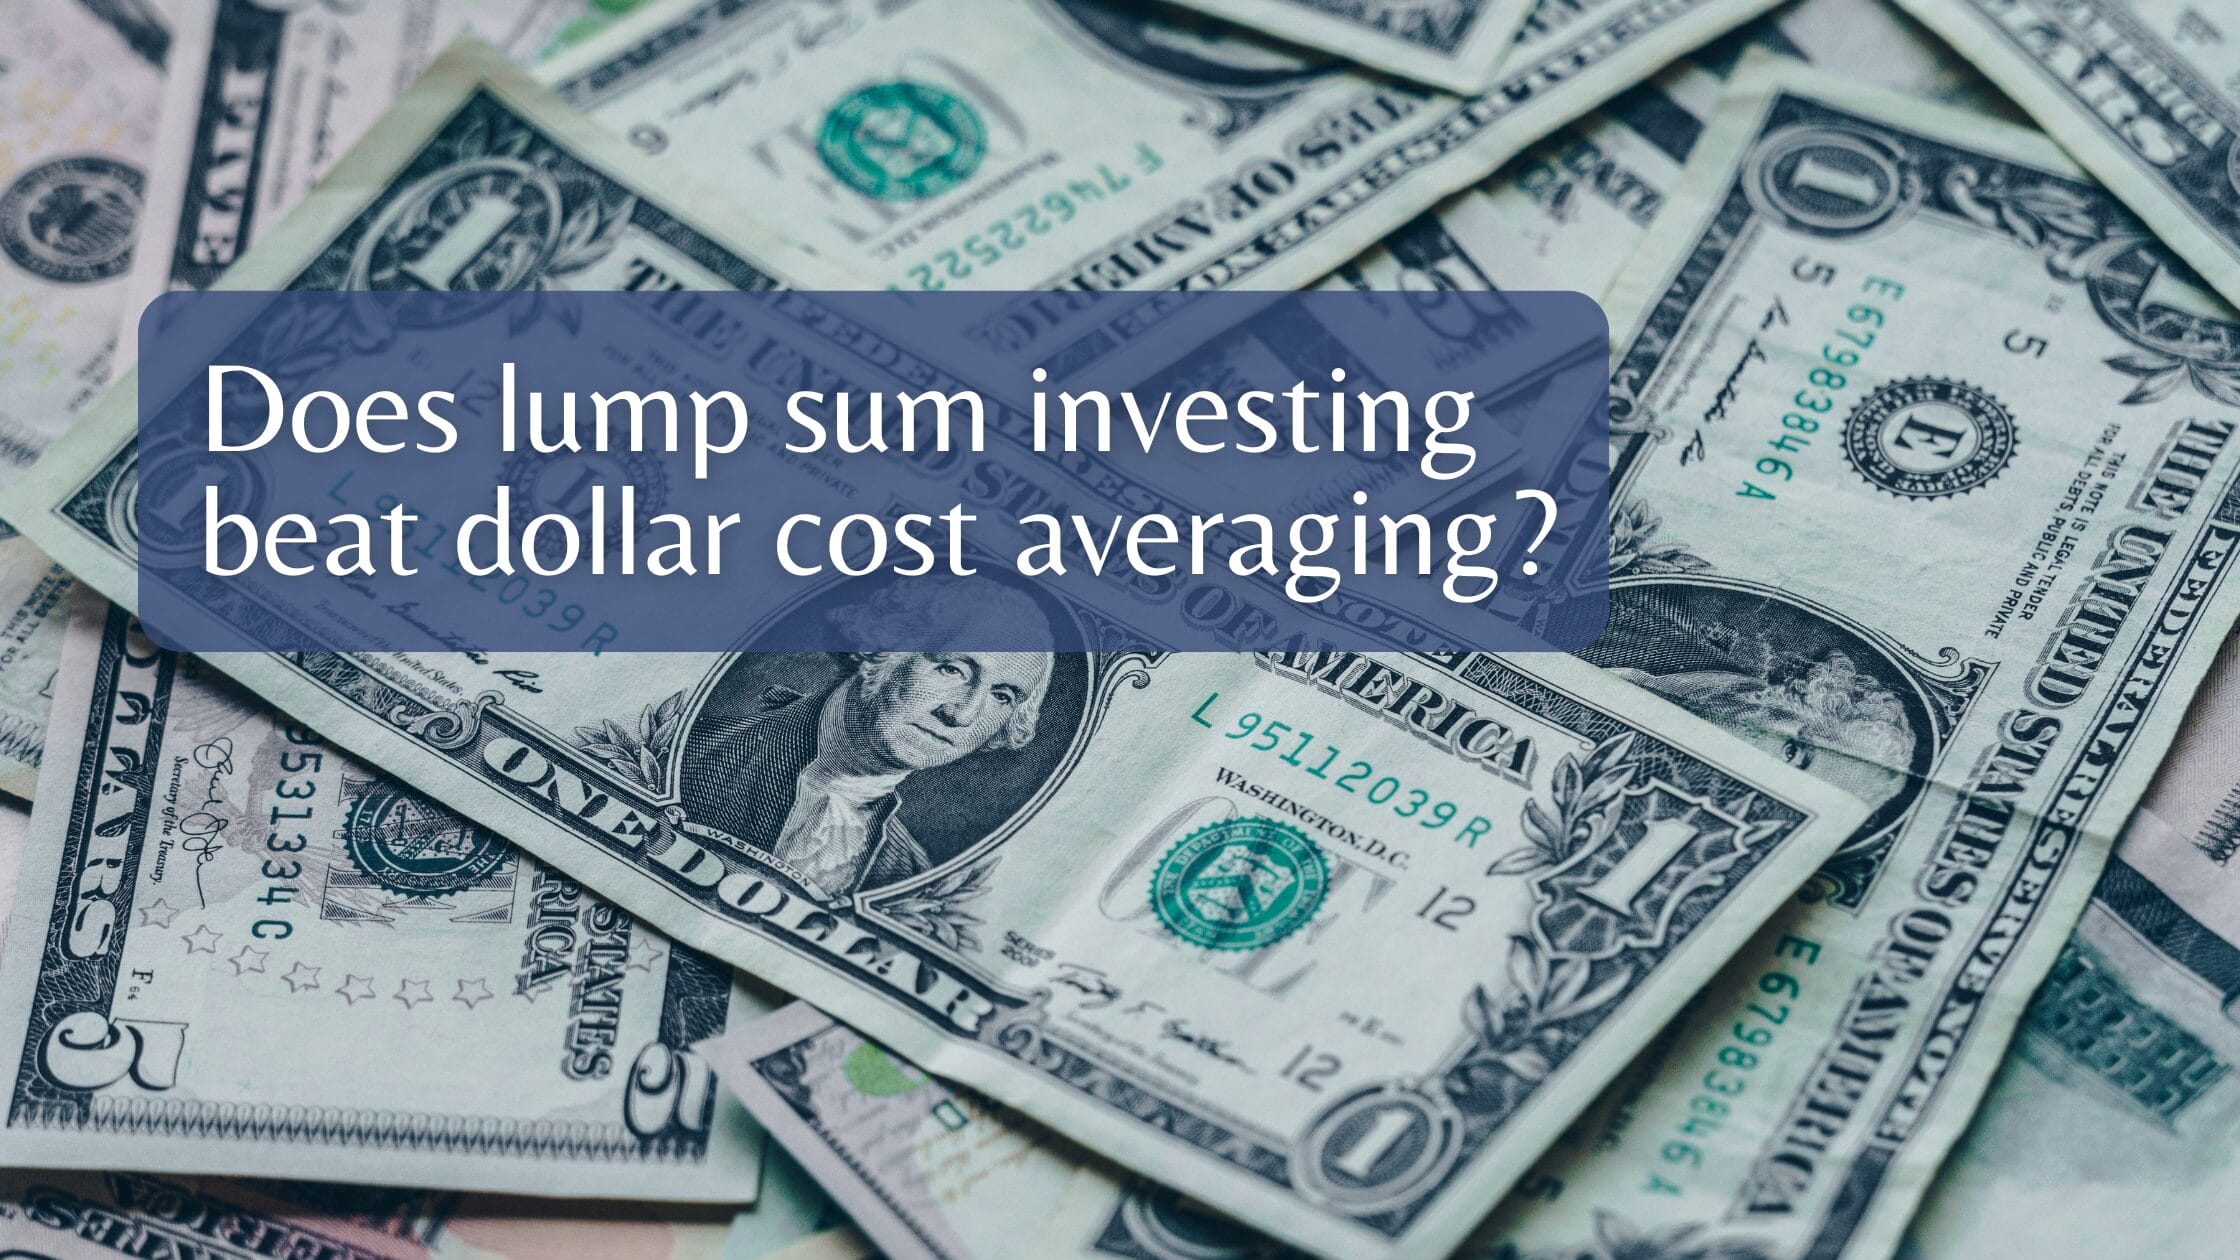 Does lump sum investing beat dollar cost averaging?